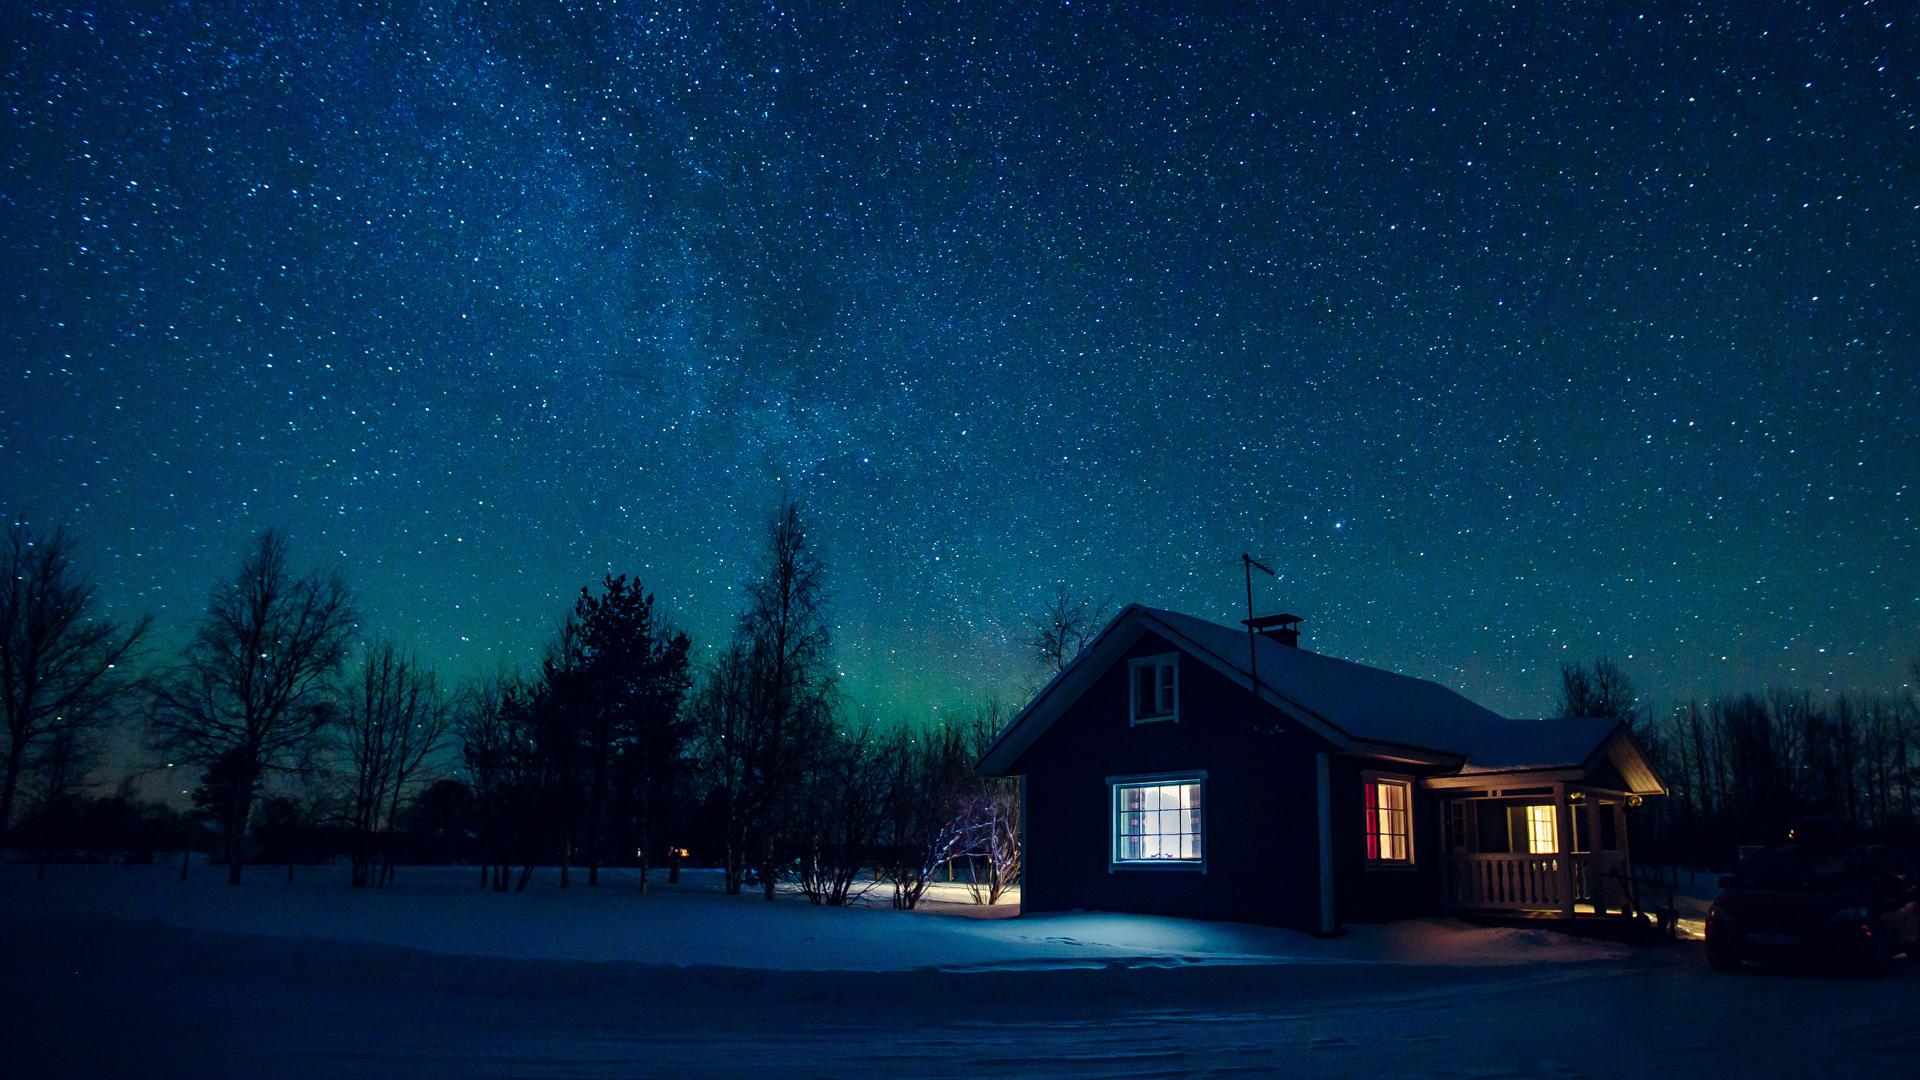 Ett litet, ensamt hus i vinternatt med stjärnklar himmel